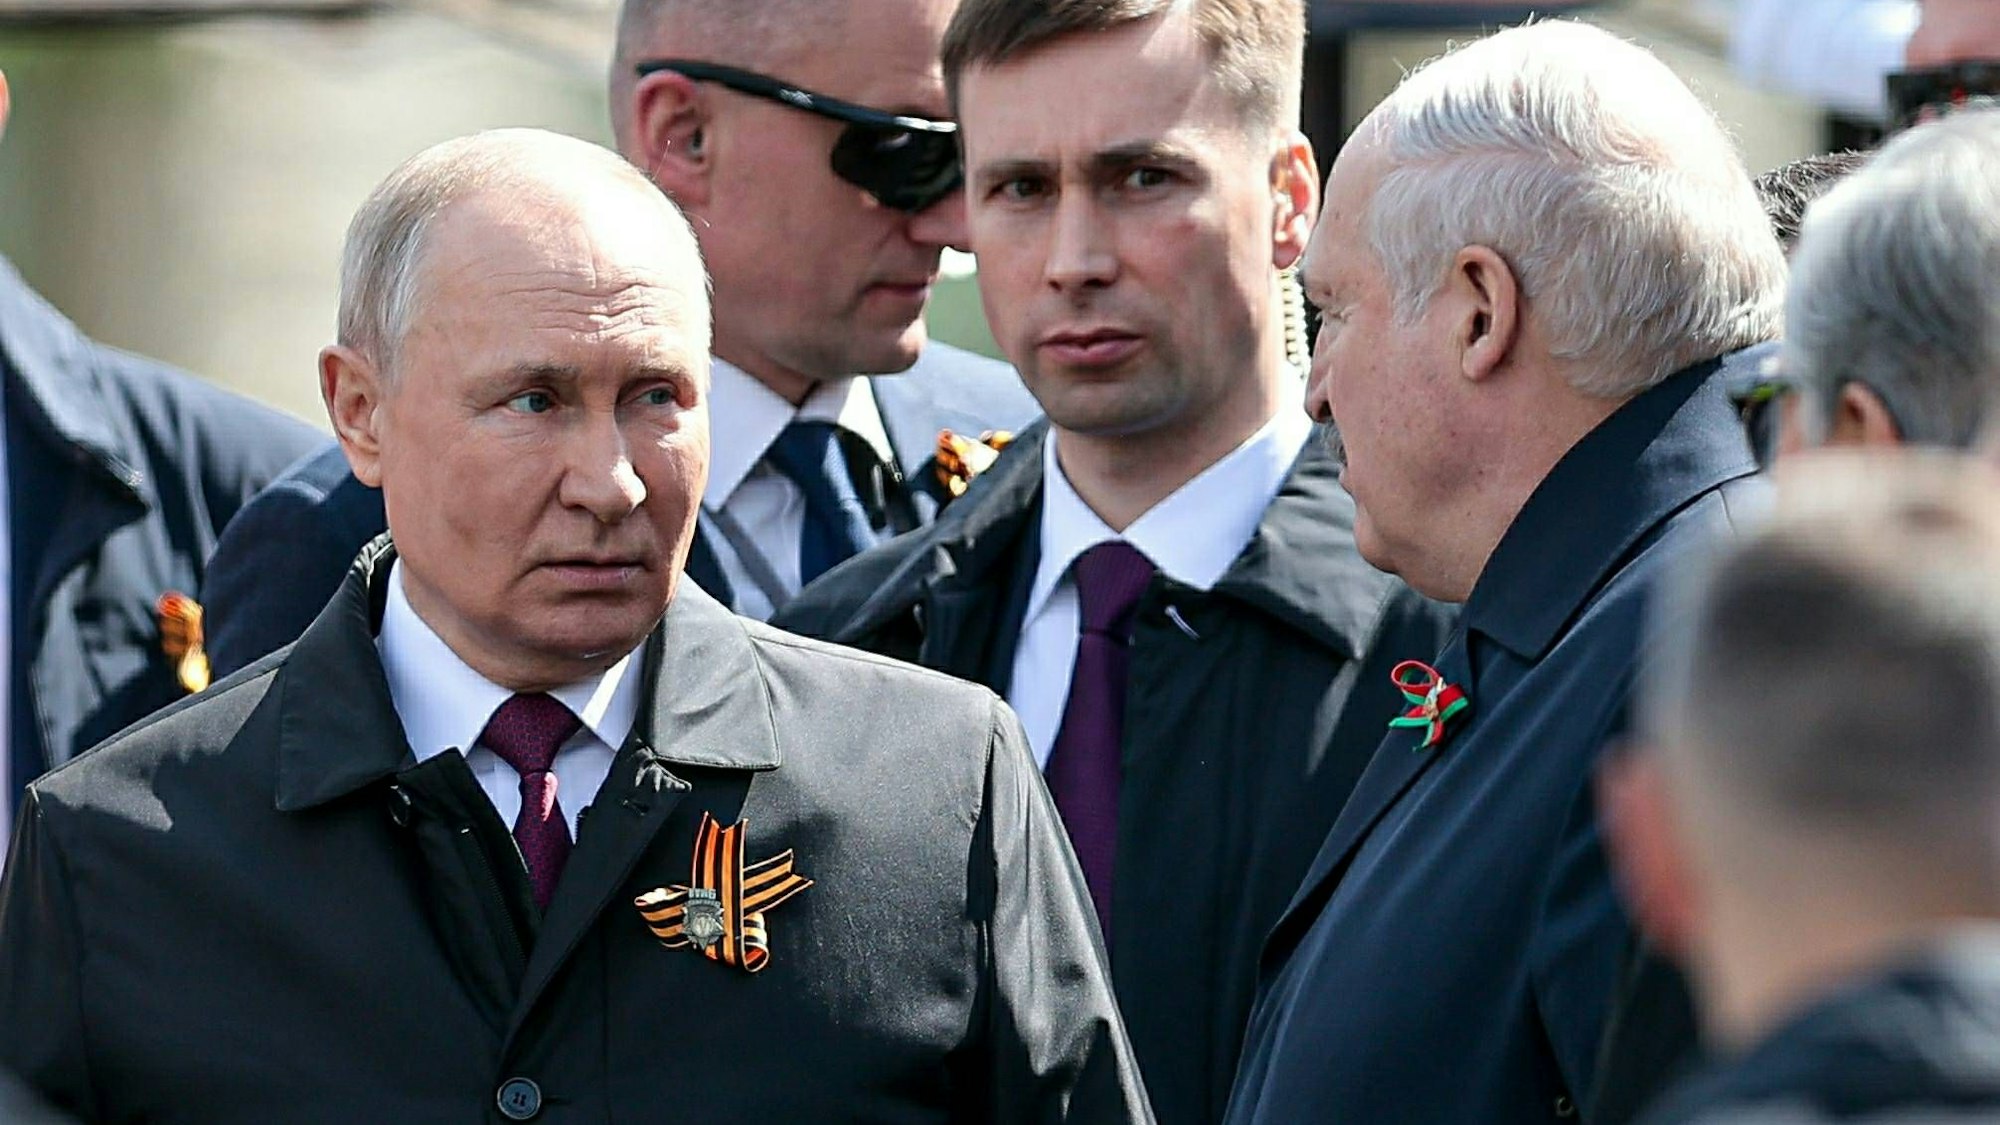 Letzter öffentlicher Auftritt: Alexander Lukaschenko (r.) im Gespräch mit Wladimir Putin (l.) bei der Militärparade am 9. Mai in Moskau. Der belarussische Diktator reiste vorzeitig ab – und wurde seitdem nicht mehr gesehen.